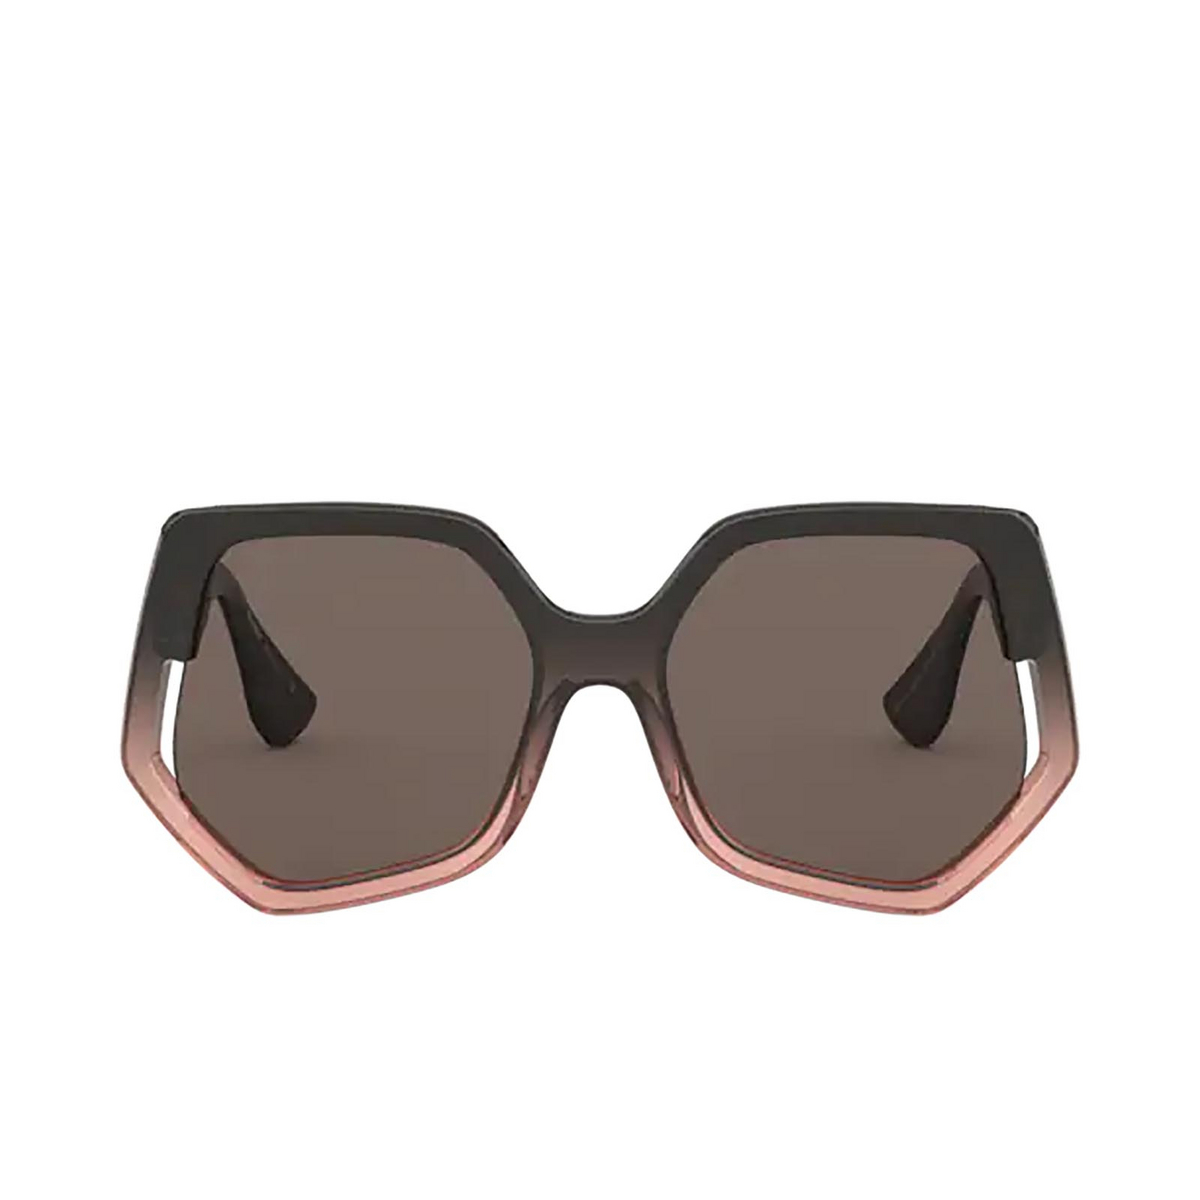 Miu Miu SPECIAL PROJECT Sunglasses 02D06B BROWN GRADIENT TRANSPARENT - front view